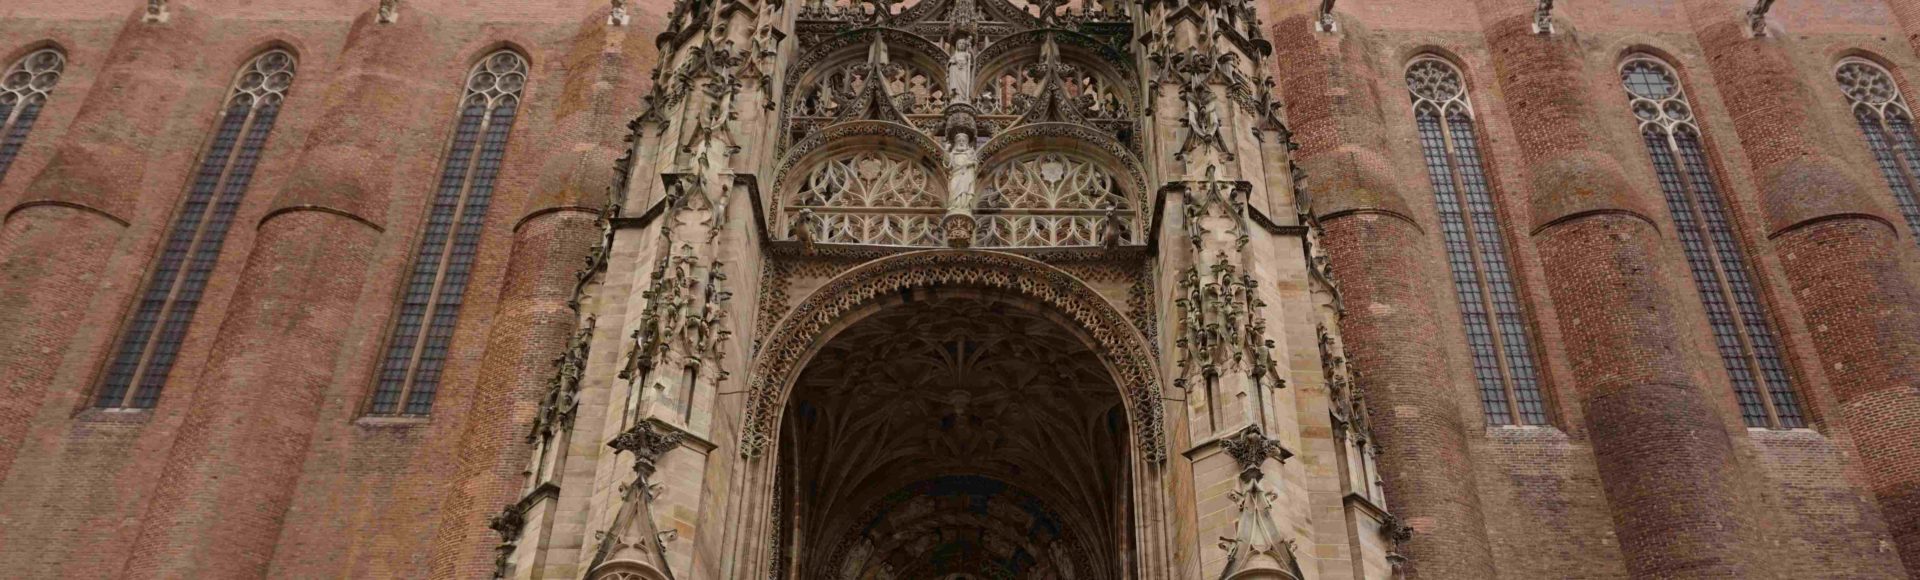 Albi – Langwedocja, Katarzy, oszałamiająca katedra z cegły